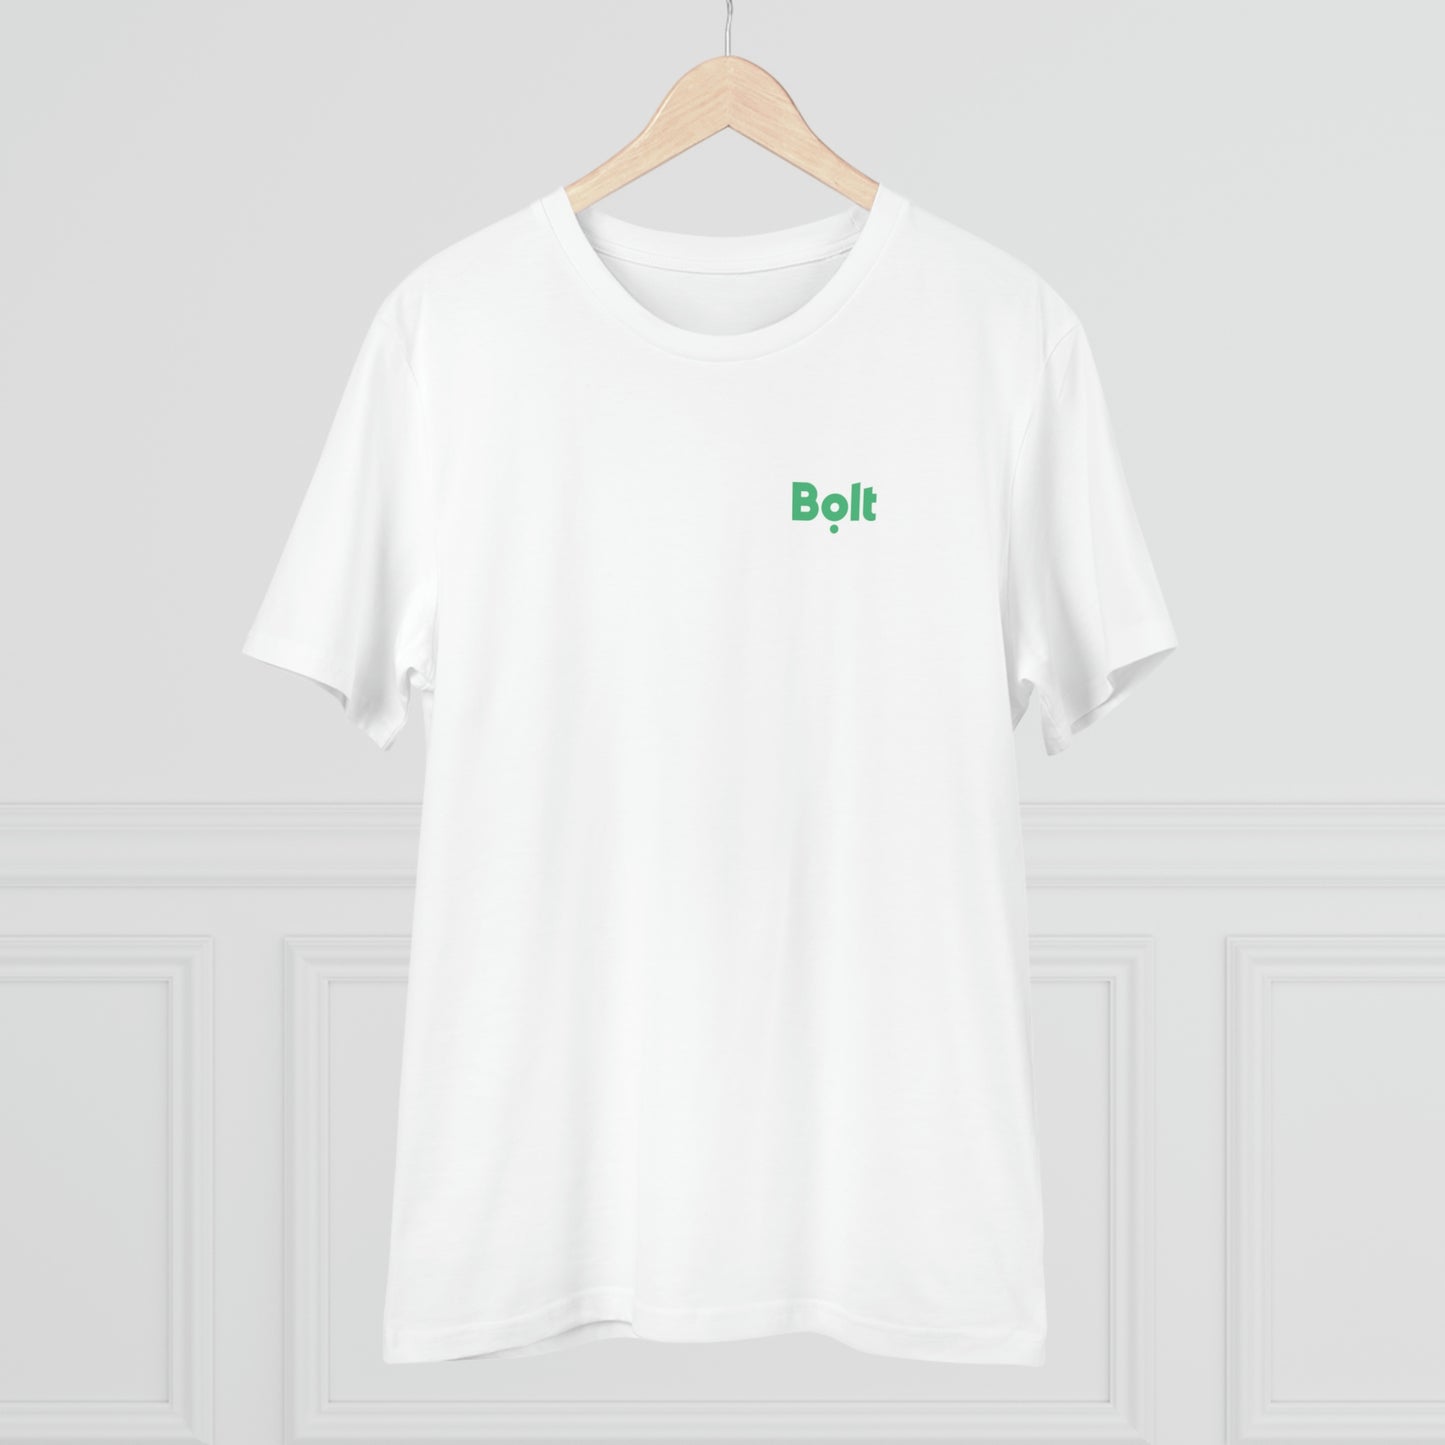 Bolt Branded t-shirt - Unisex